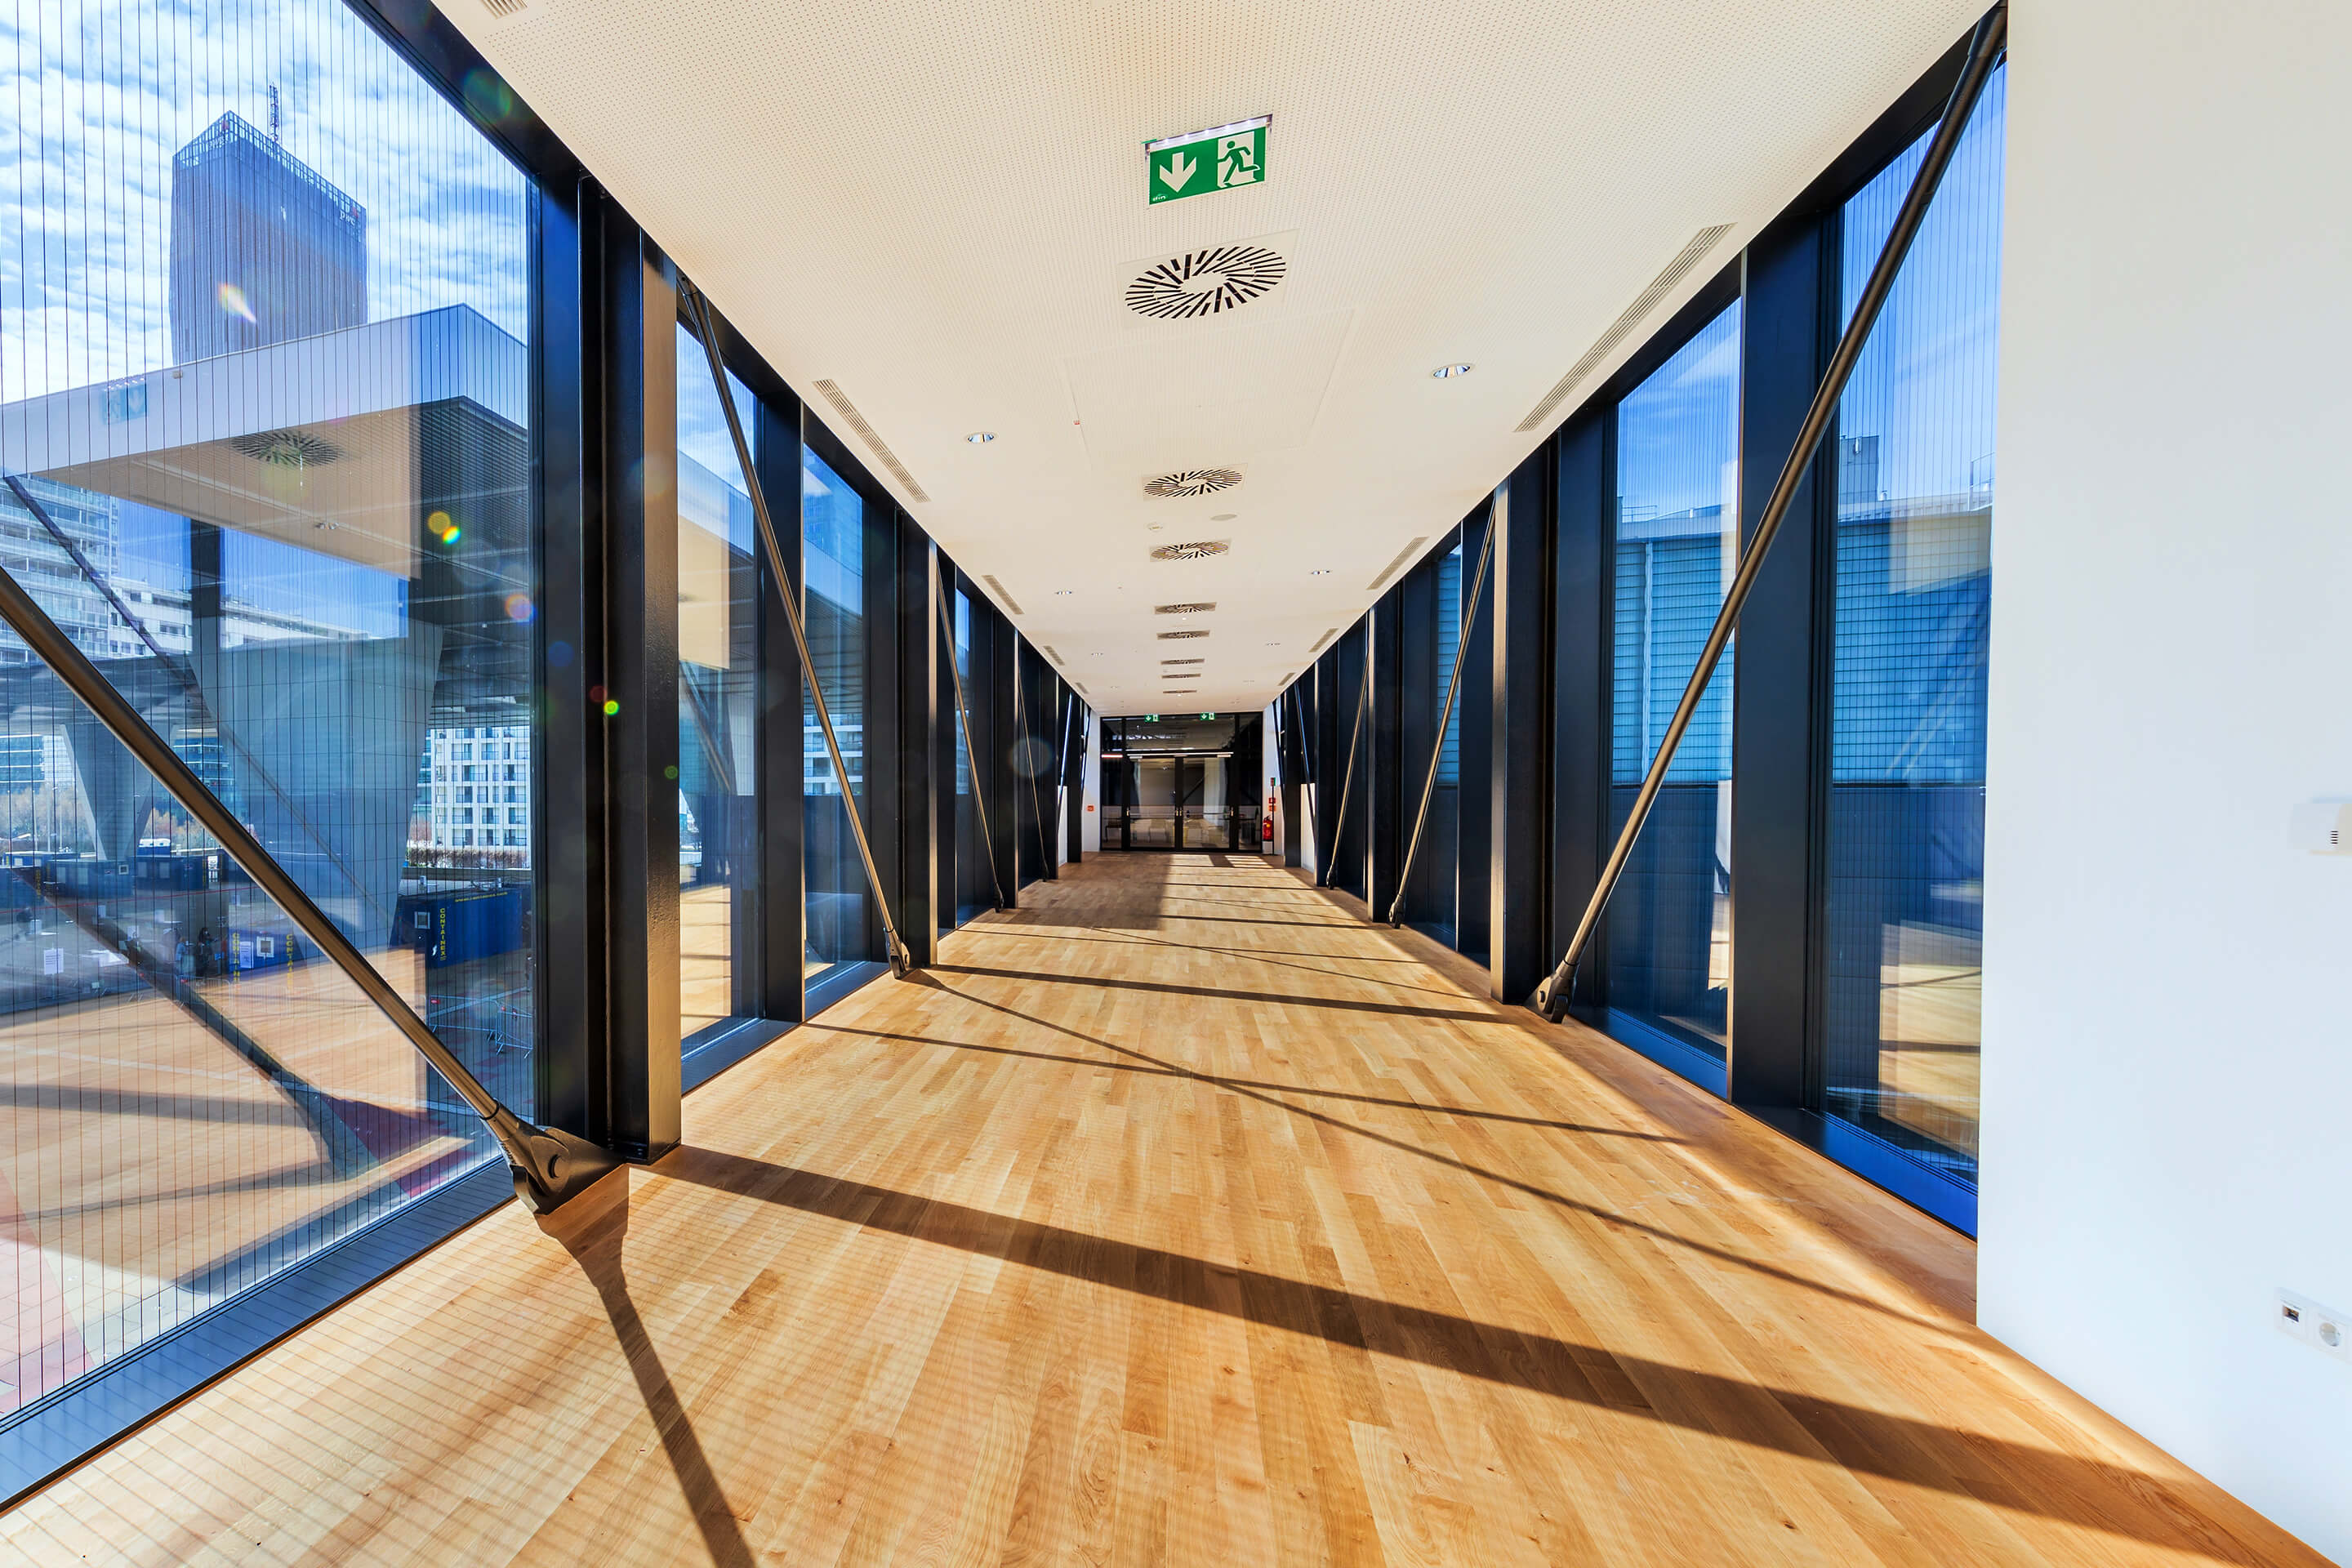 Foto: neuer Panorama-Walk von Level 1 in die Halle X4 des Austria Center Vienna